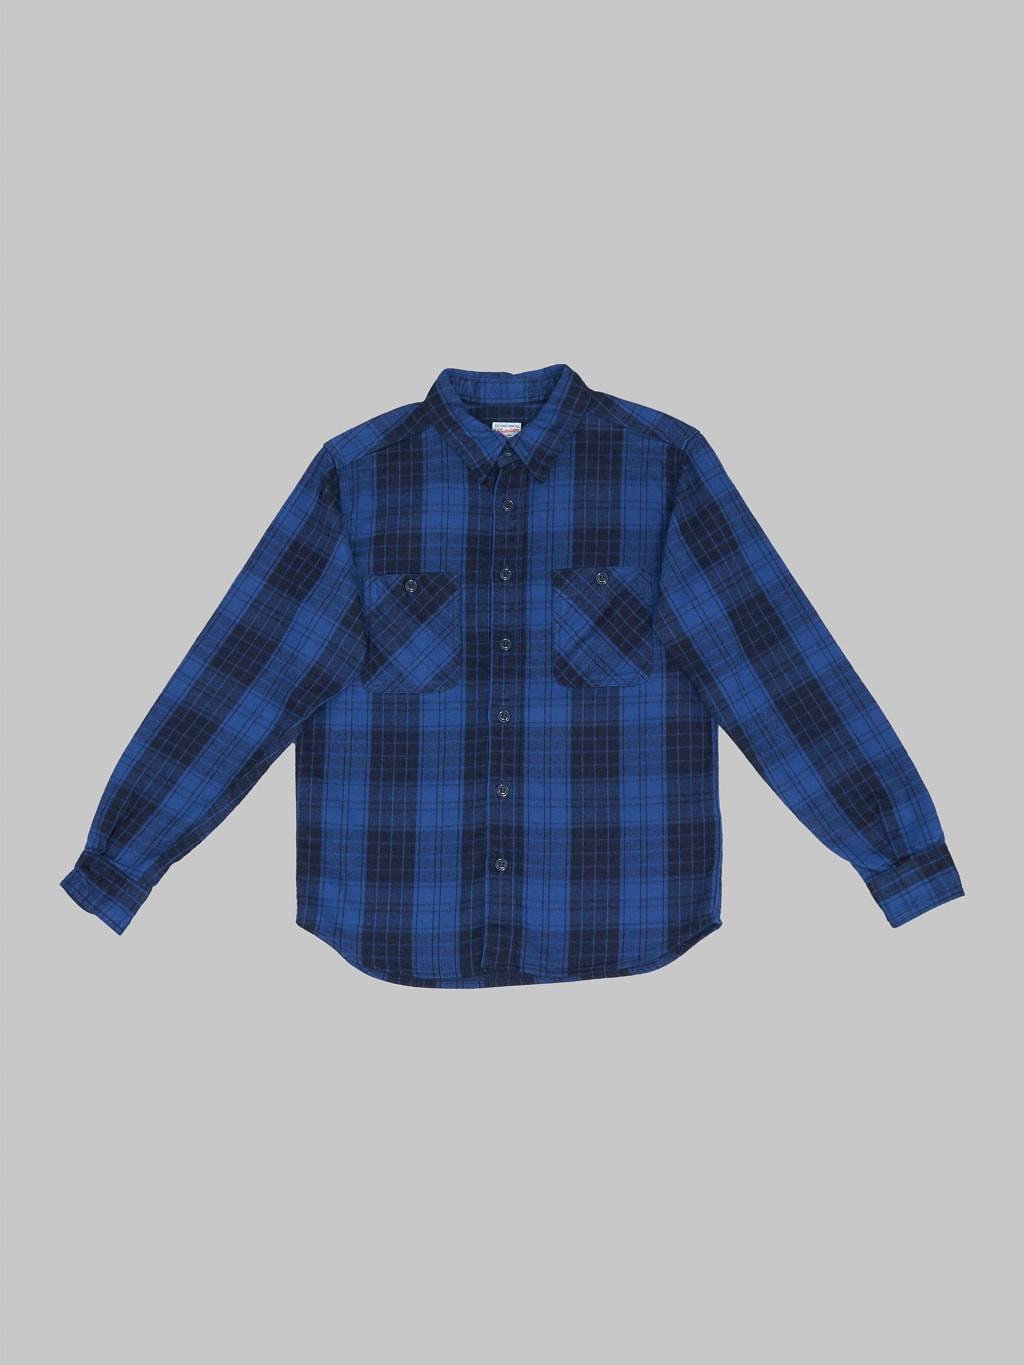 Momotaro original indigo twill check flannel shirt front view